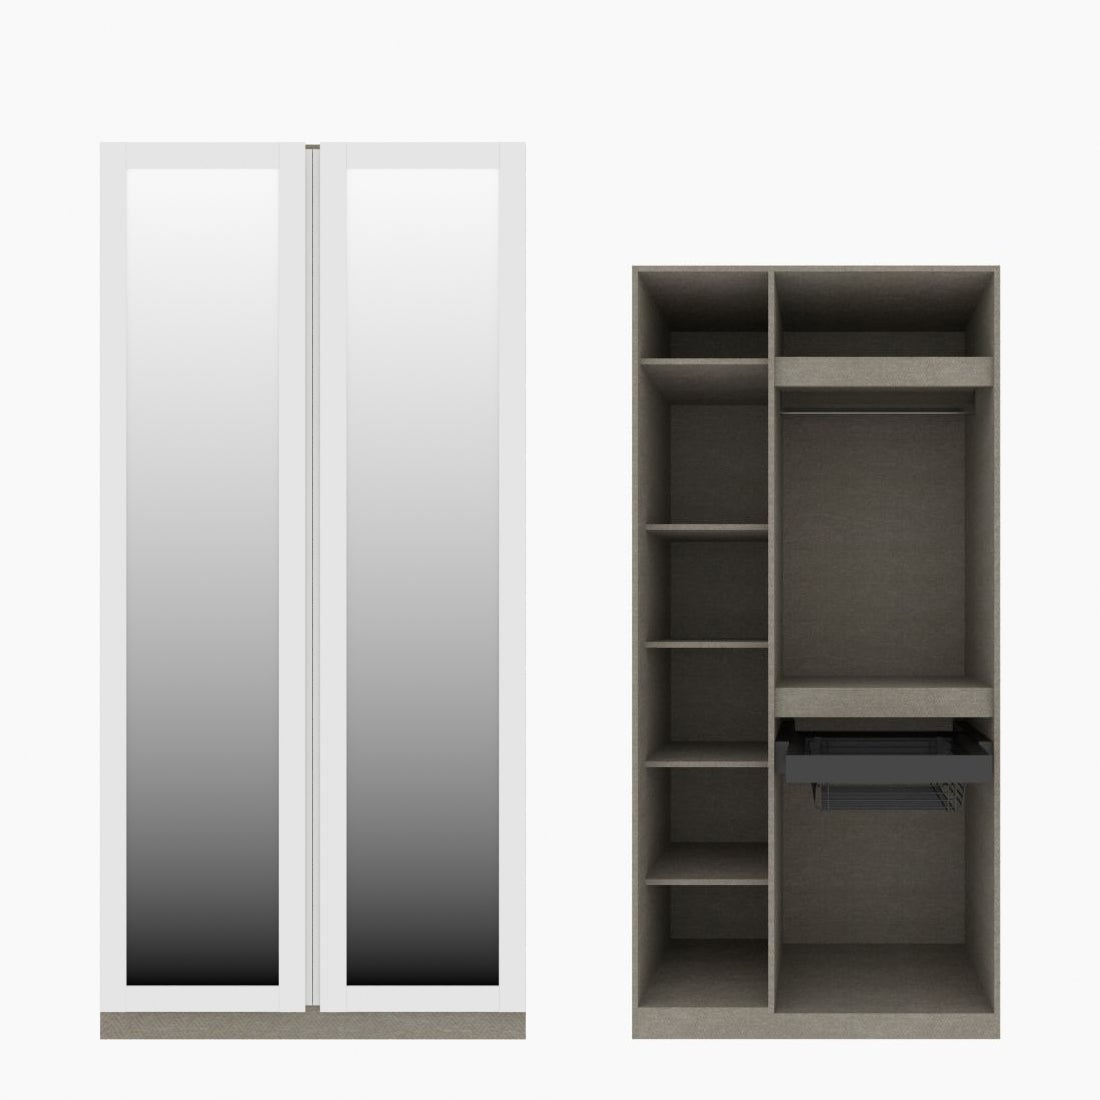 ตู้เสื้อผ้า รวมฟังก์ชั่นยอดฮิต OP-K02(ตะกร้า) ขนาด 100 ซม. รุ่น Blox สีขาว&กระจกเงา01